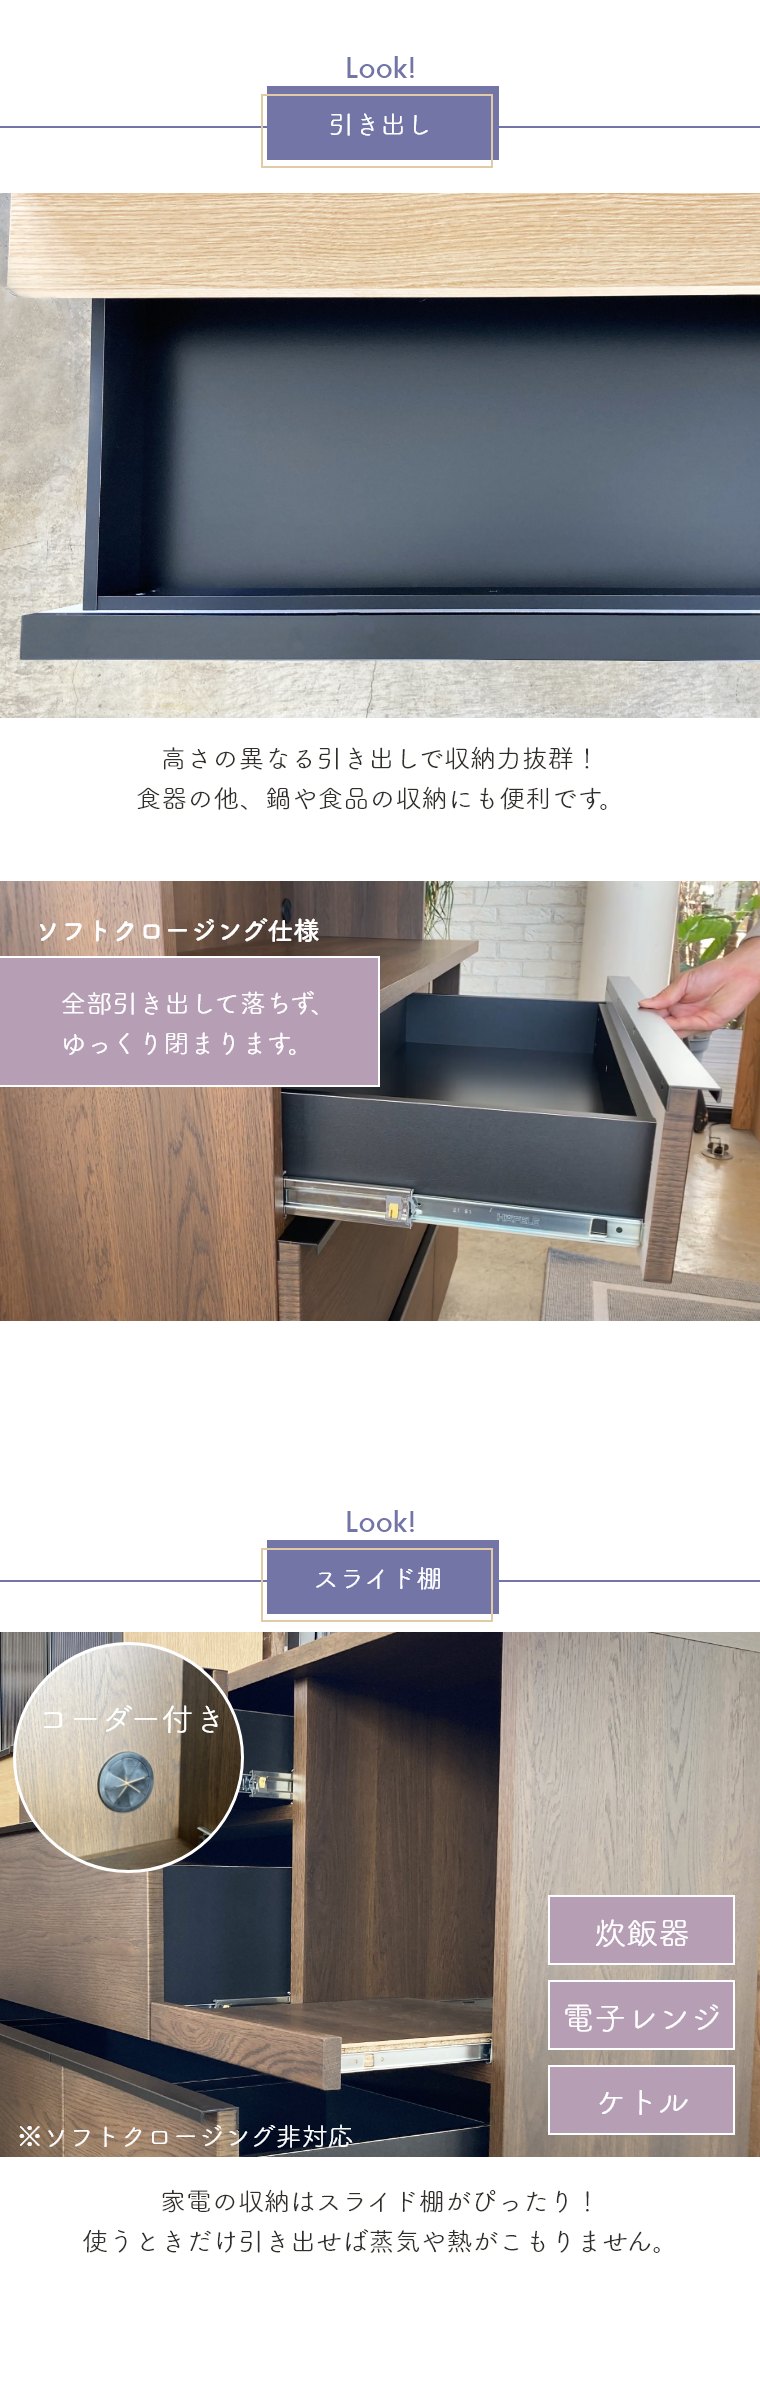 キッチンカウンター BALD バルド ガルト 日本製 国産 木製 シンプル 大容量 引き出し